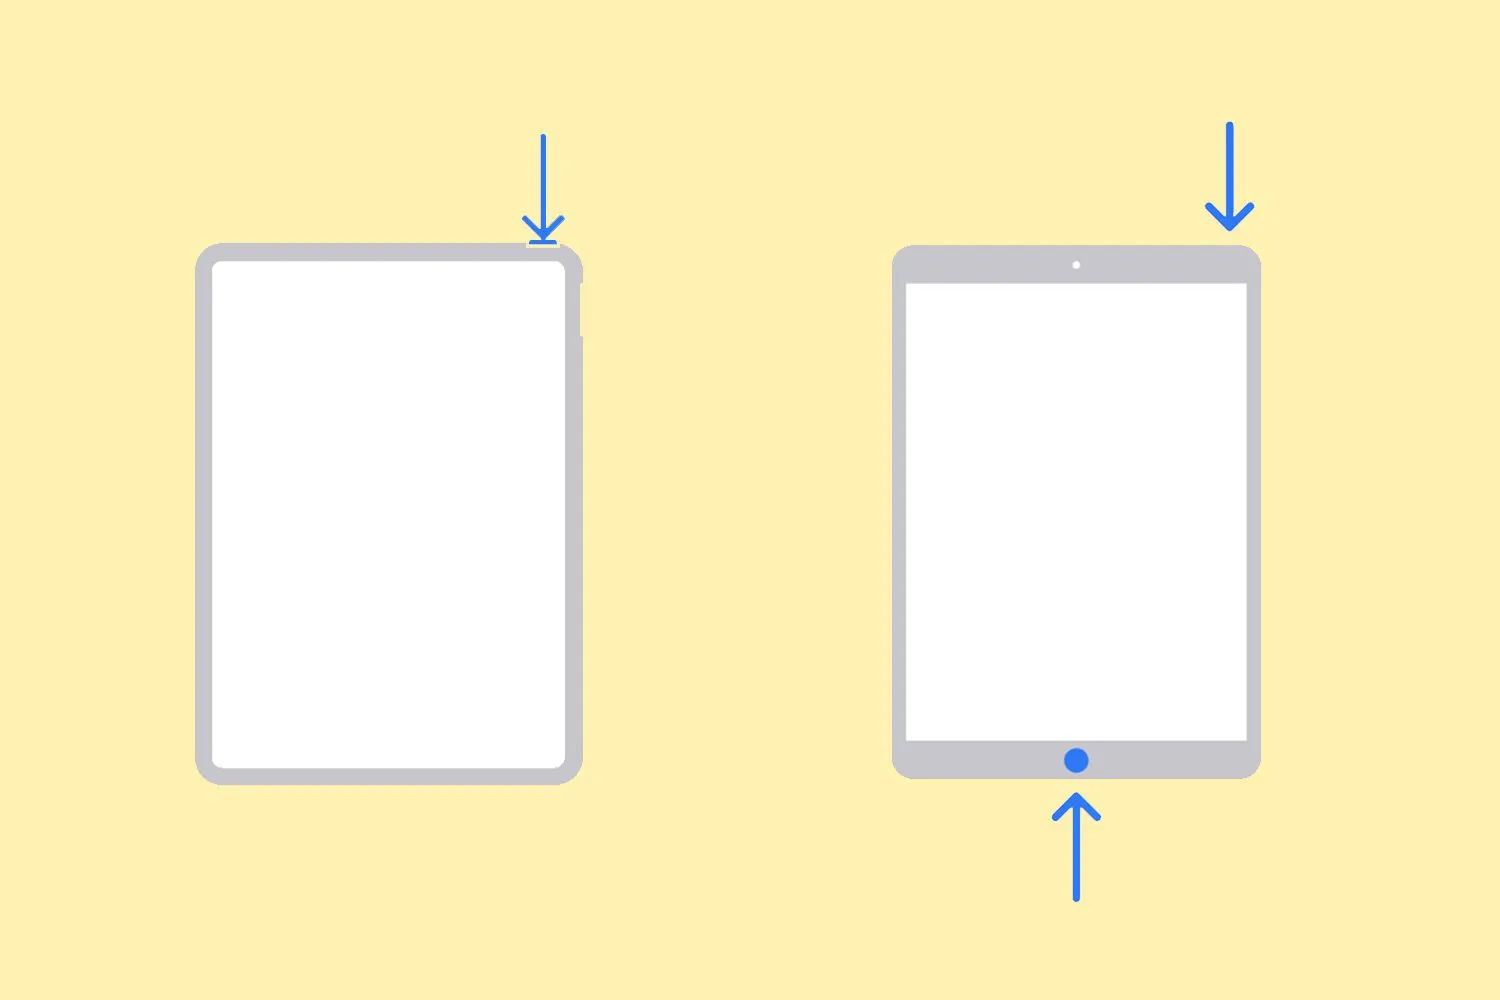 ilustrações do botão para pressionar para desligar um iPad